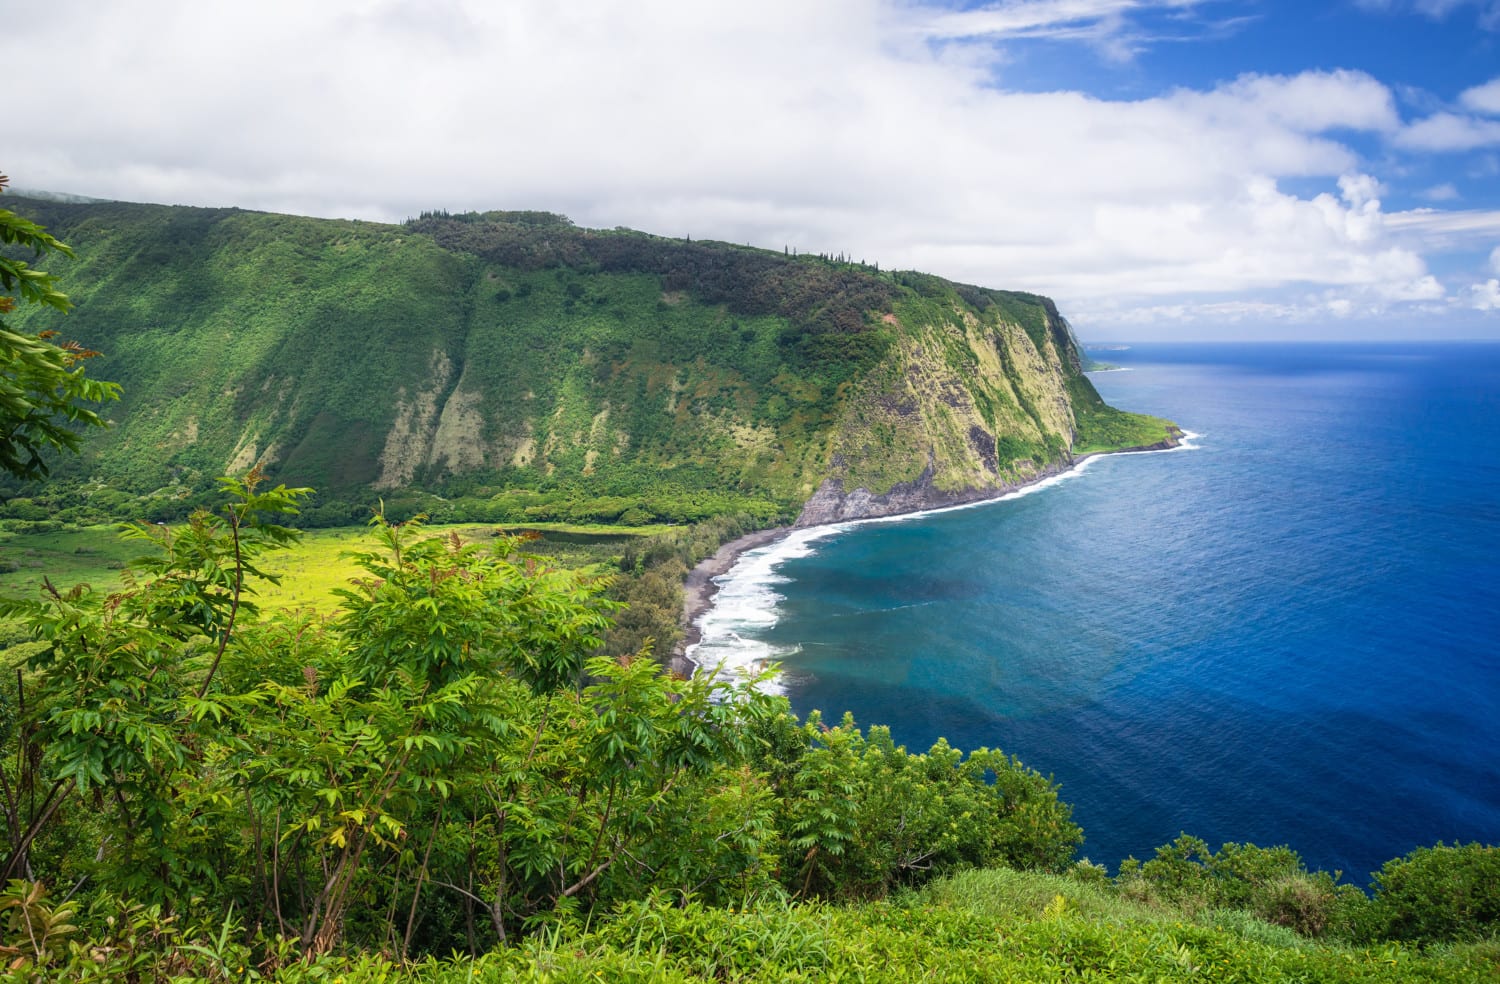 オーダーメイドハワイ島 "日本語ガイド・チャーターツアーで効率よくお勧めの場所にご案内します”